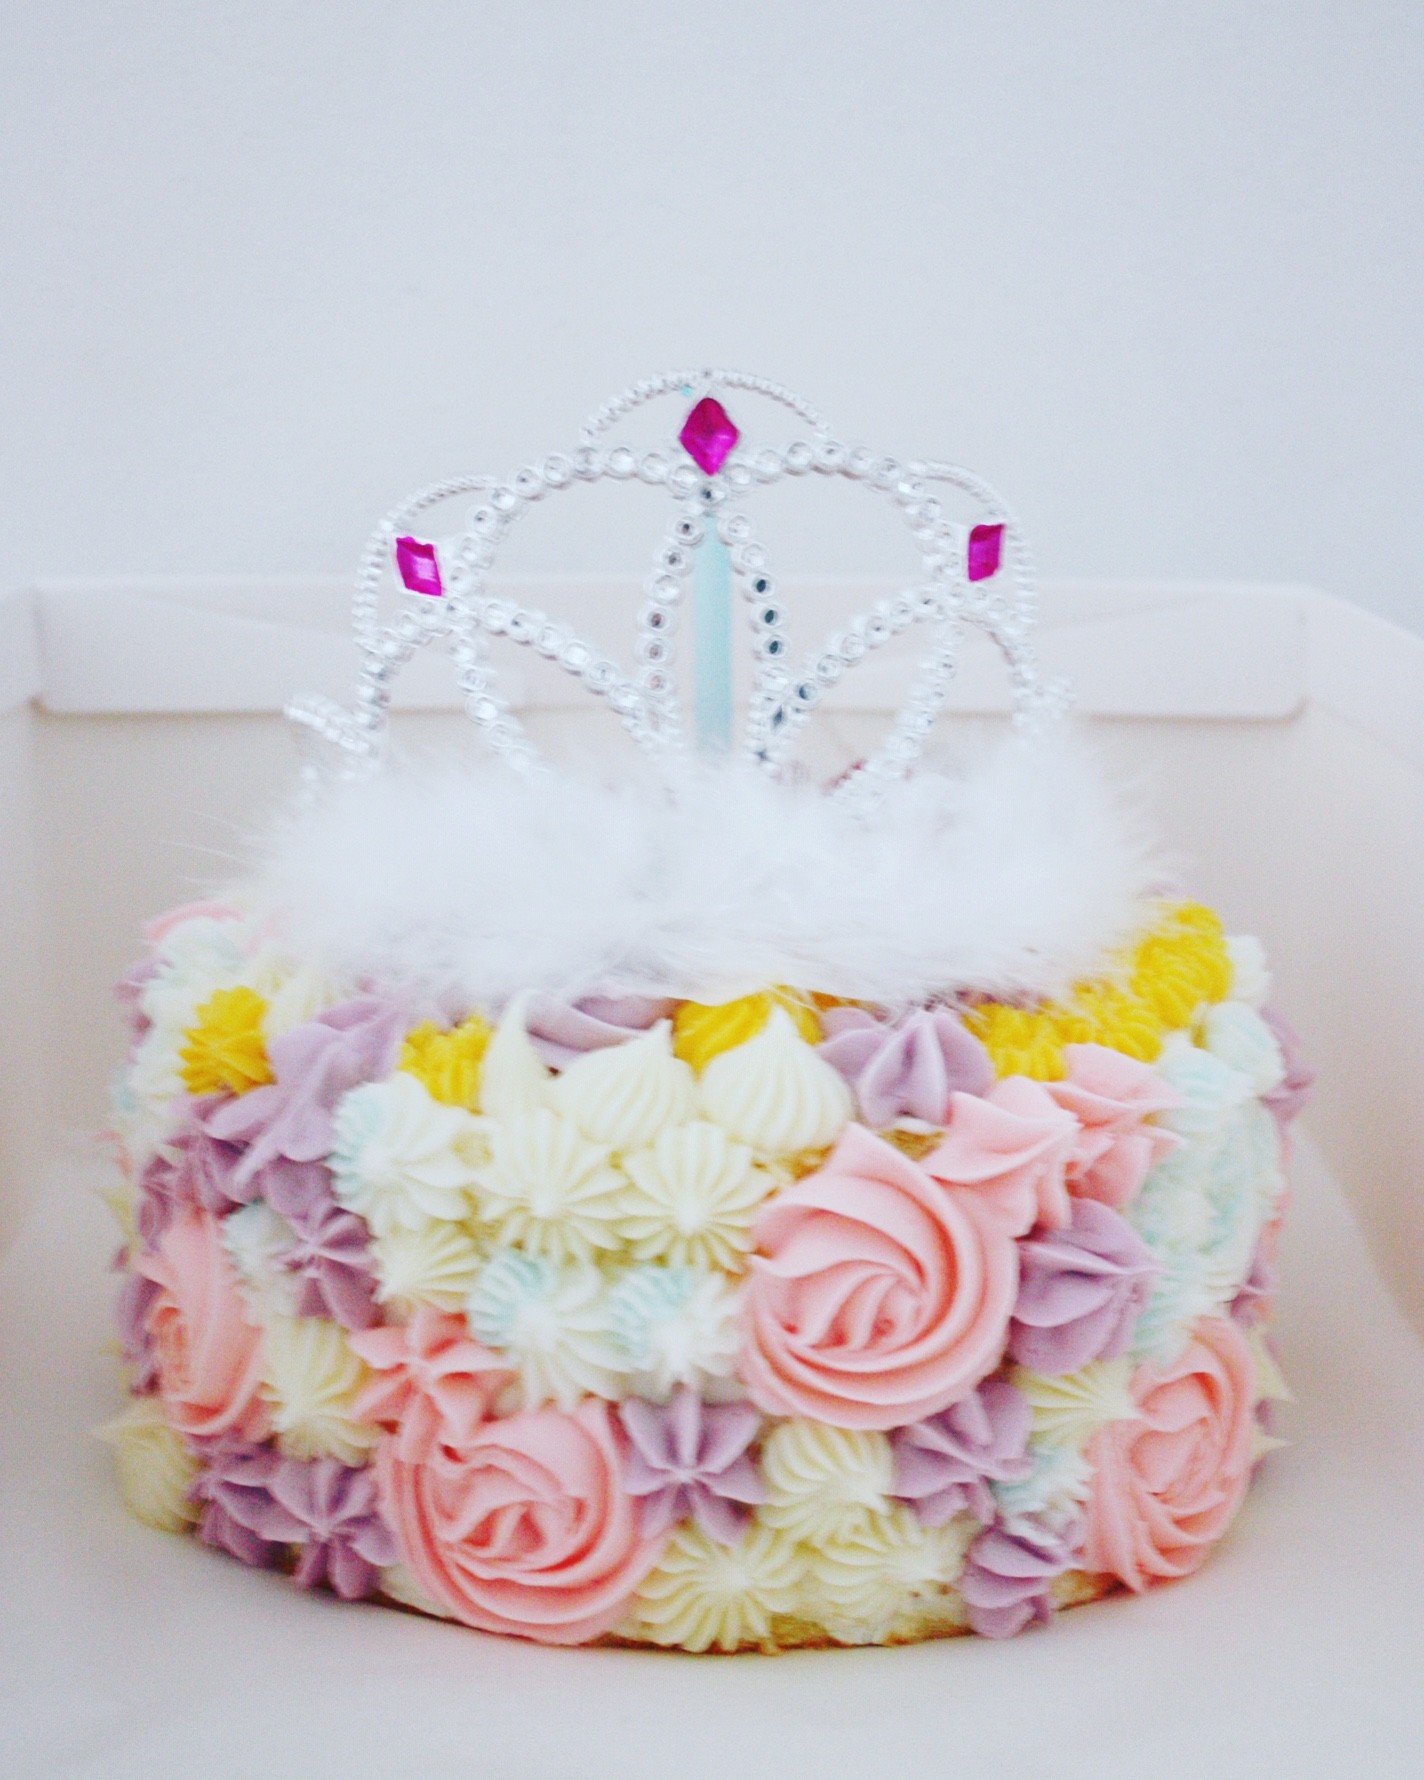 プリンセスのケーキ パリ風 ママスタイル Blog Madame Figaro Jp フィガロジャポン